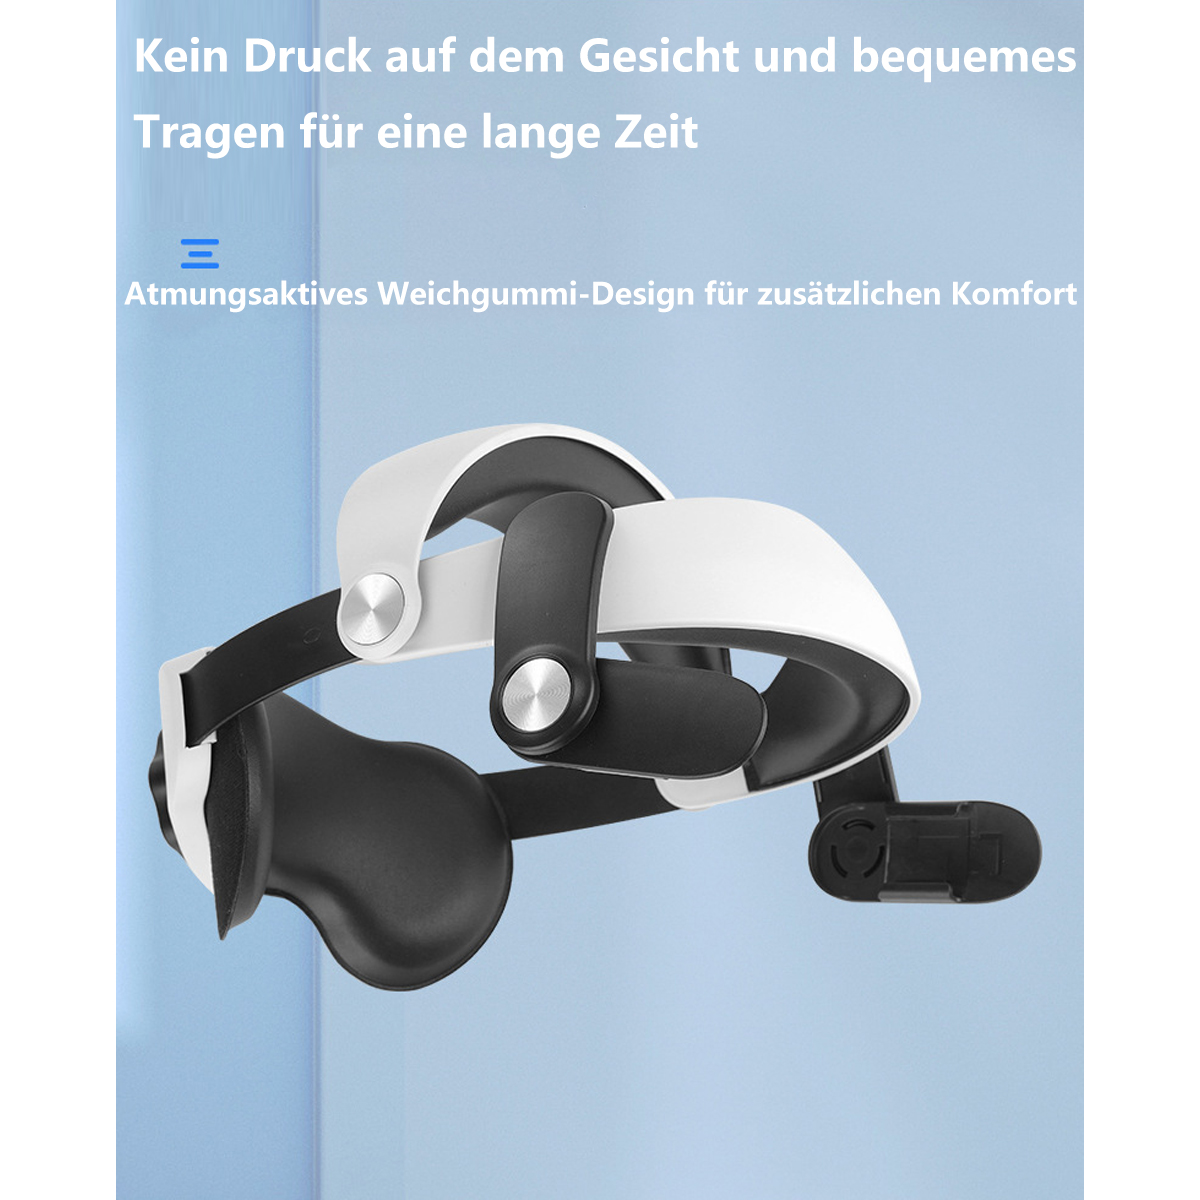 quest3 VR-Zubehör oculus upgrade SYNTEK einstellbar aufladung quest2 austauschbar elite hersteller zubehör headset vr